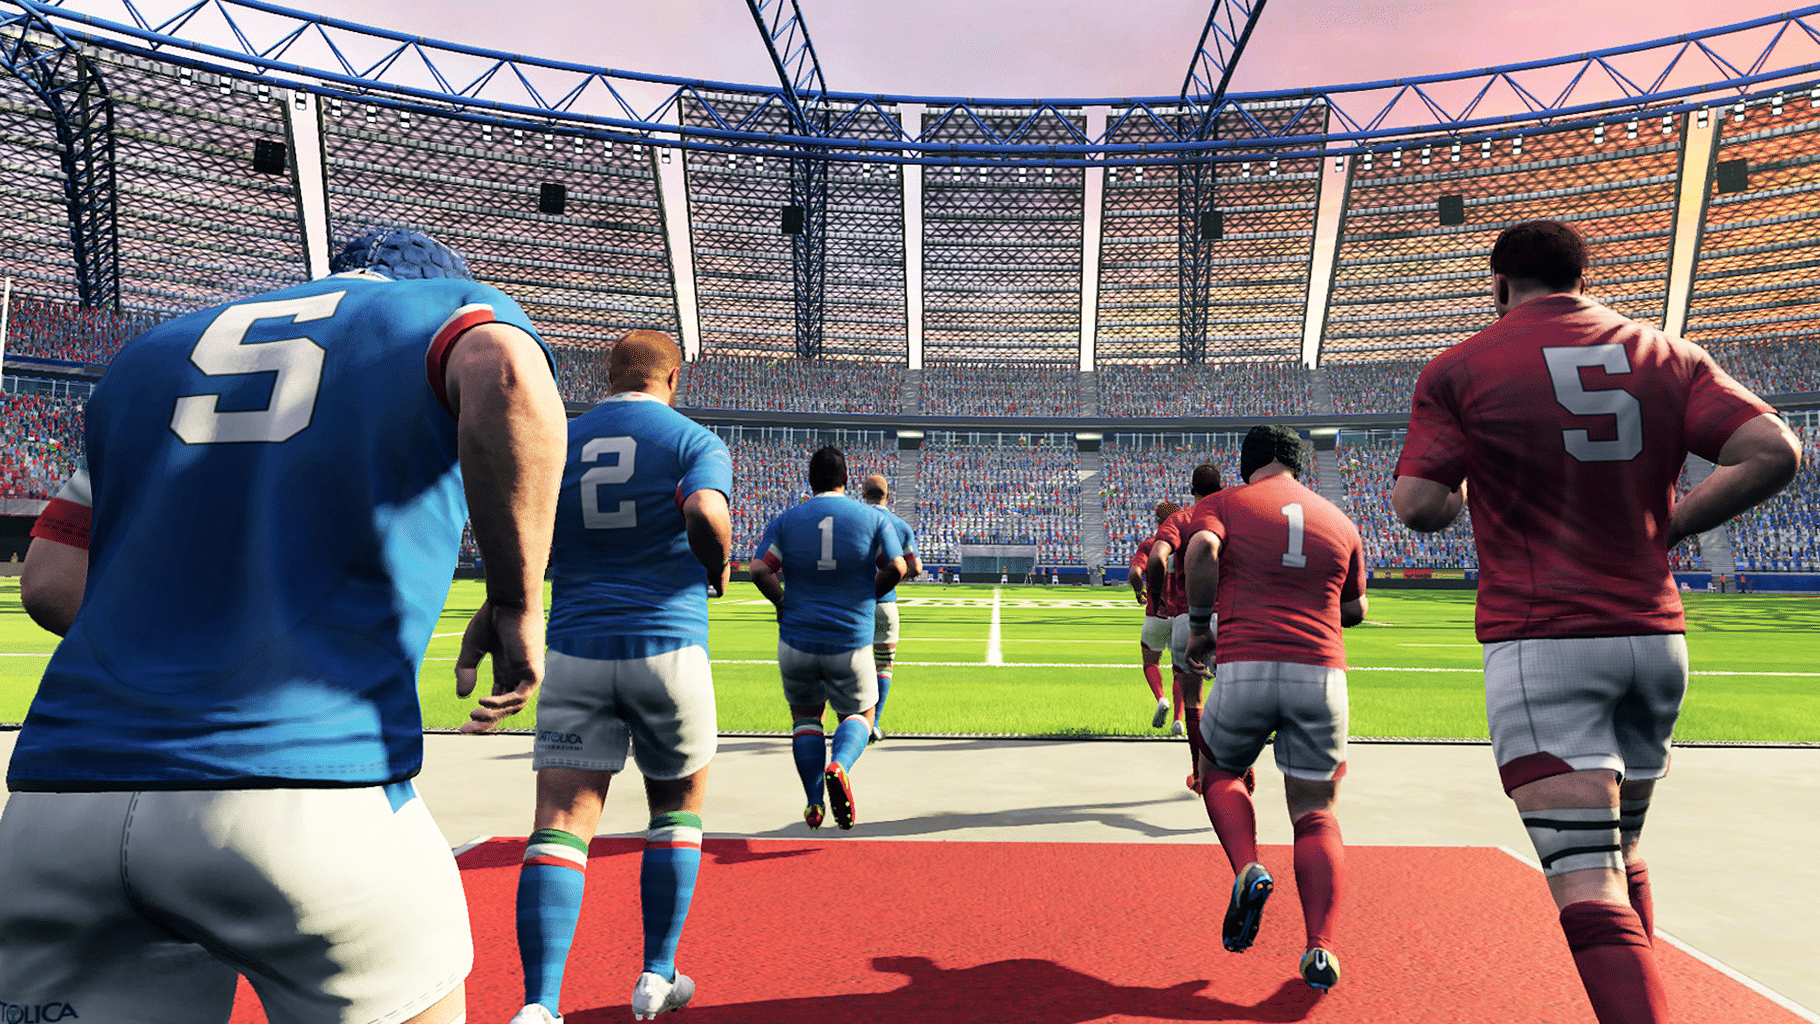 Rugby 20 screenshot